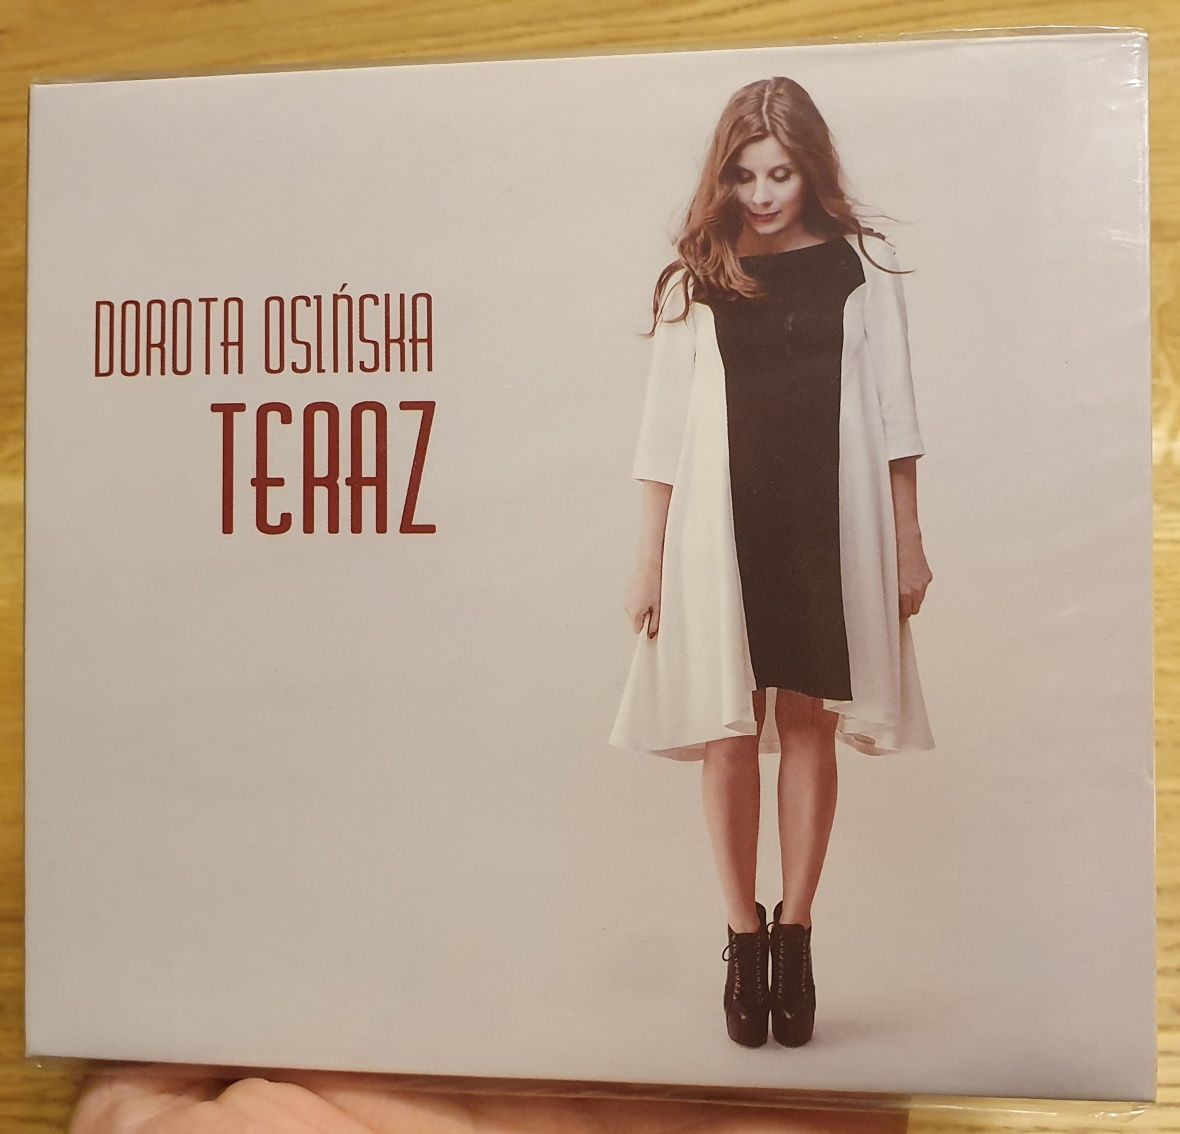 Dorota Osińska - Teraz CD (nowa, w folii)